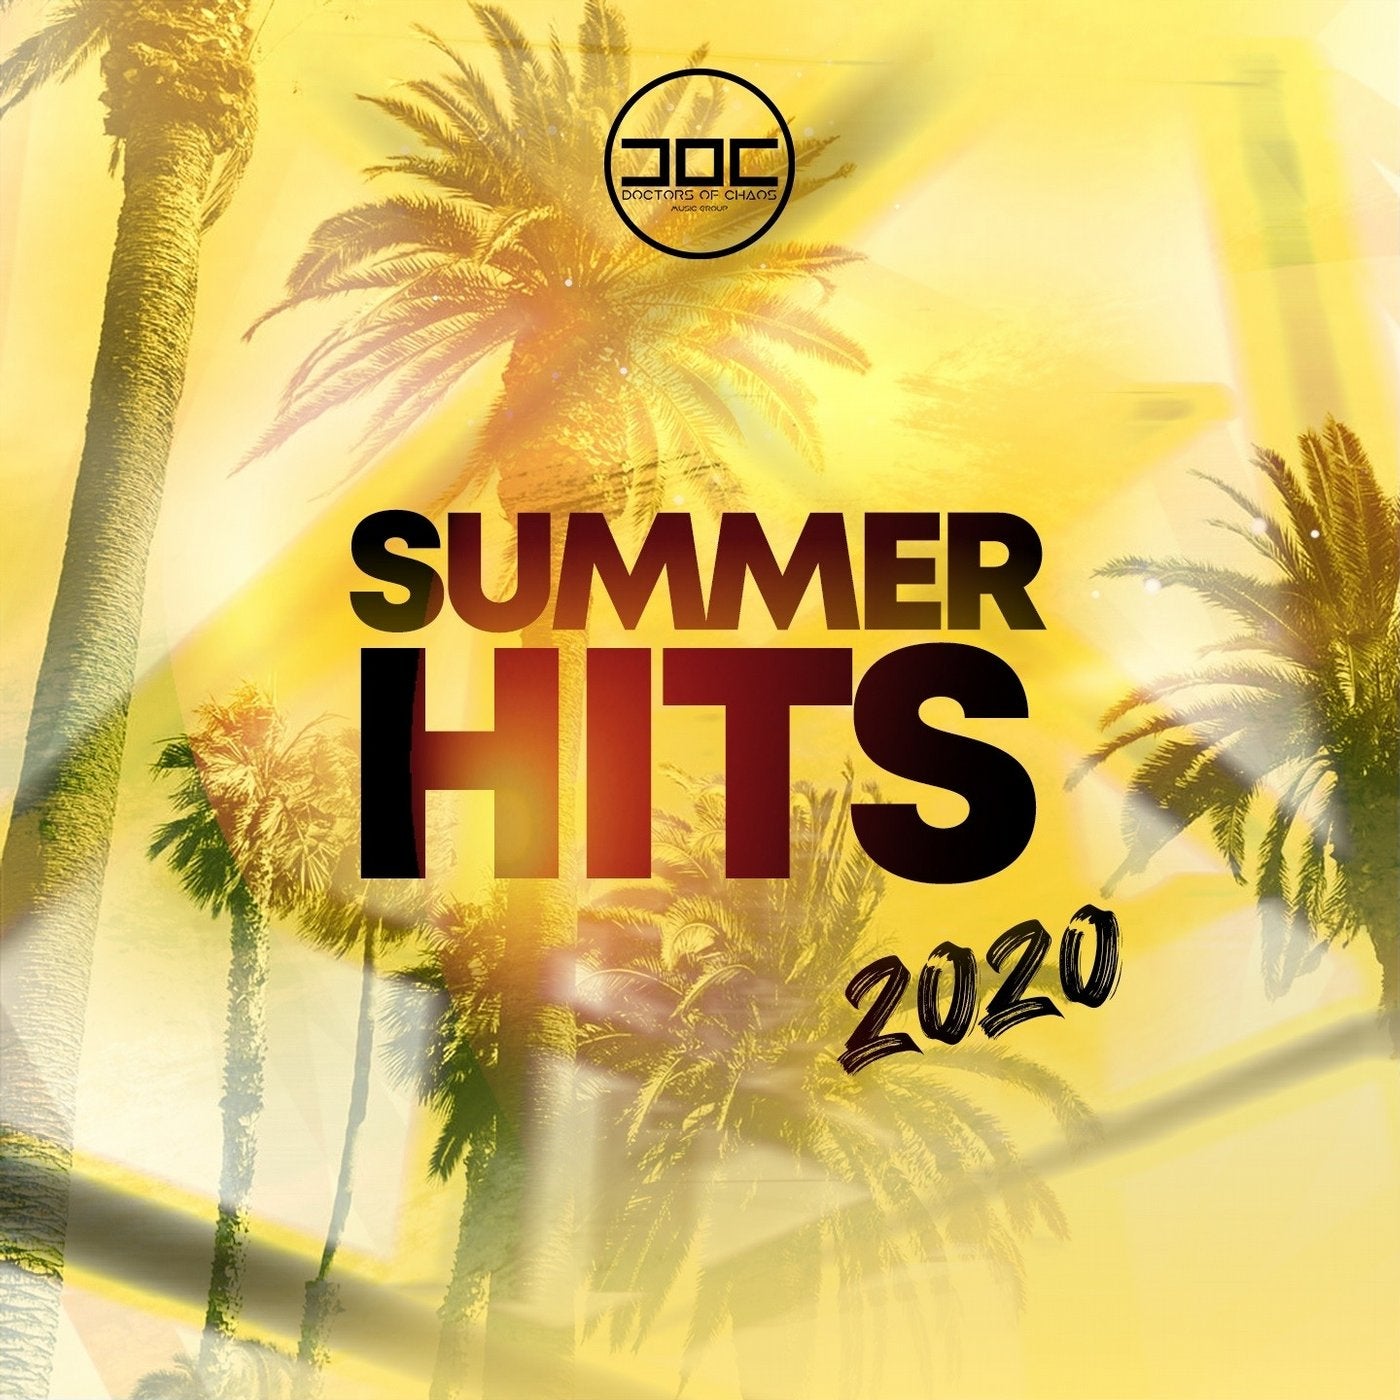 Summer hits 2020